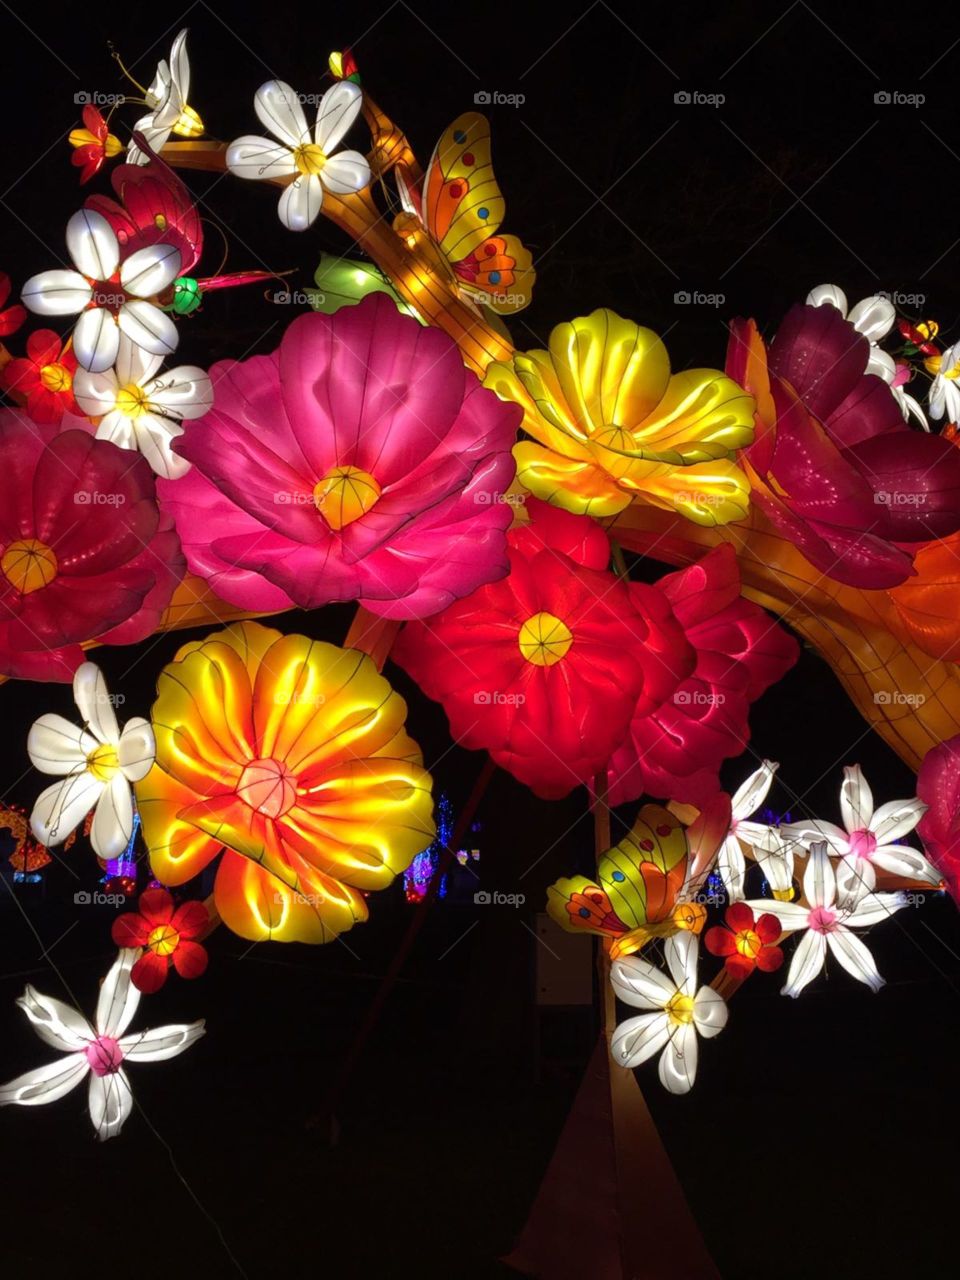 flower silk lanterns